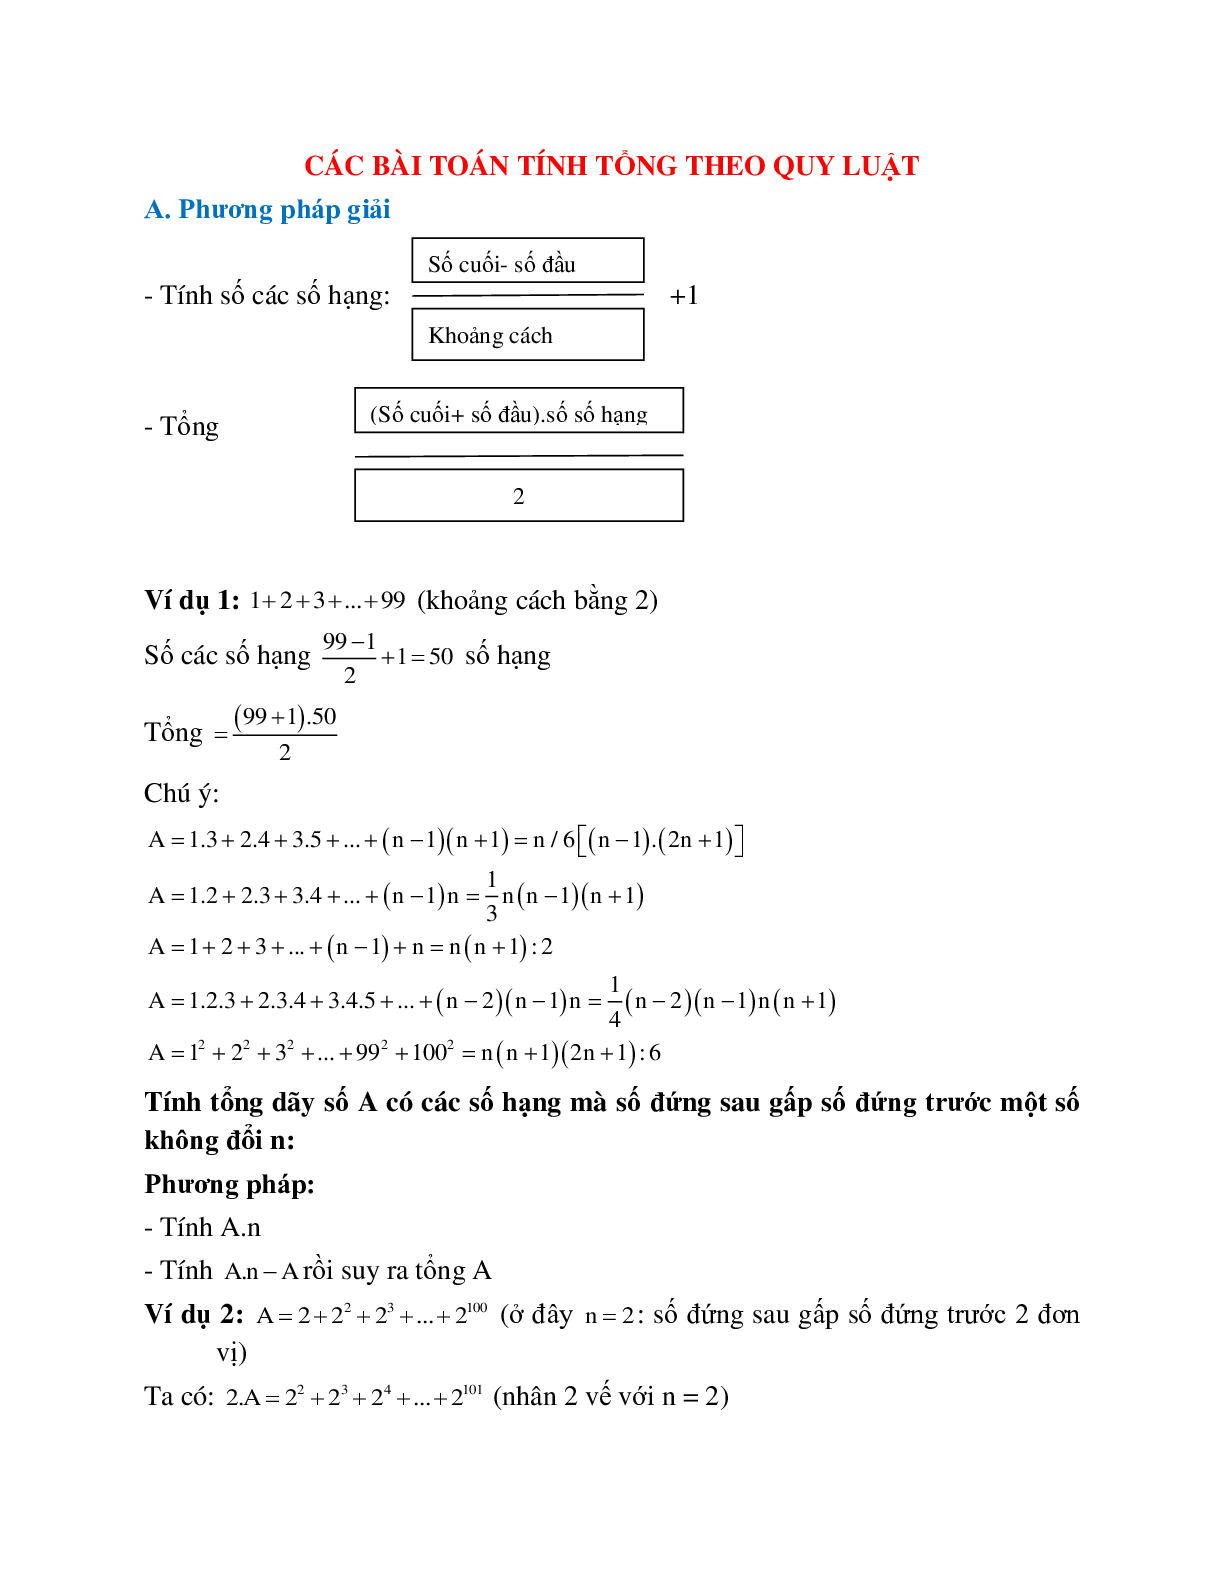 Phương pháp giải và bài tập về Các bài toán tính tổng theo quy luật đầy đủ chọn lọc (trang 1)